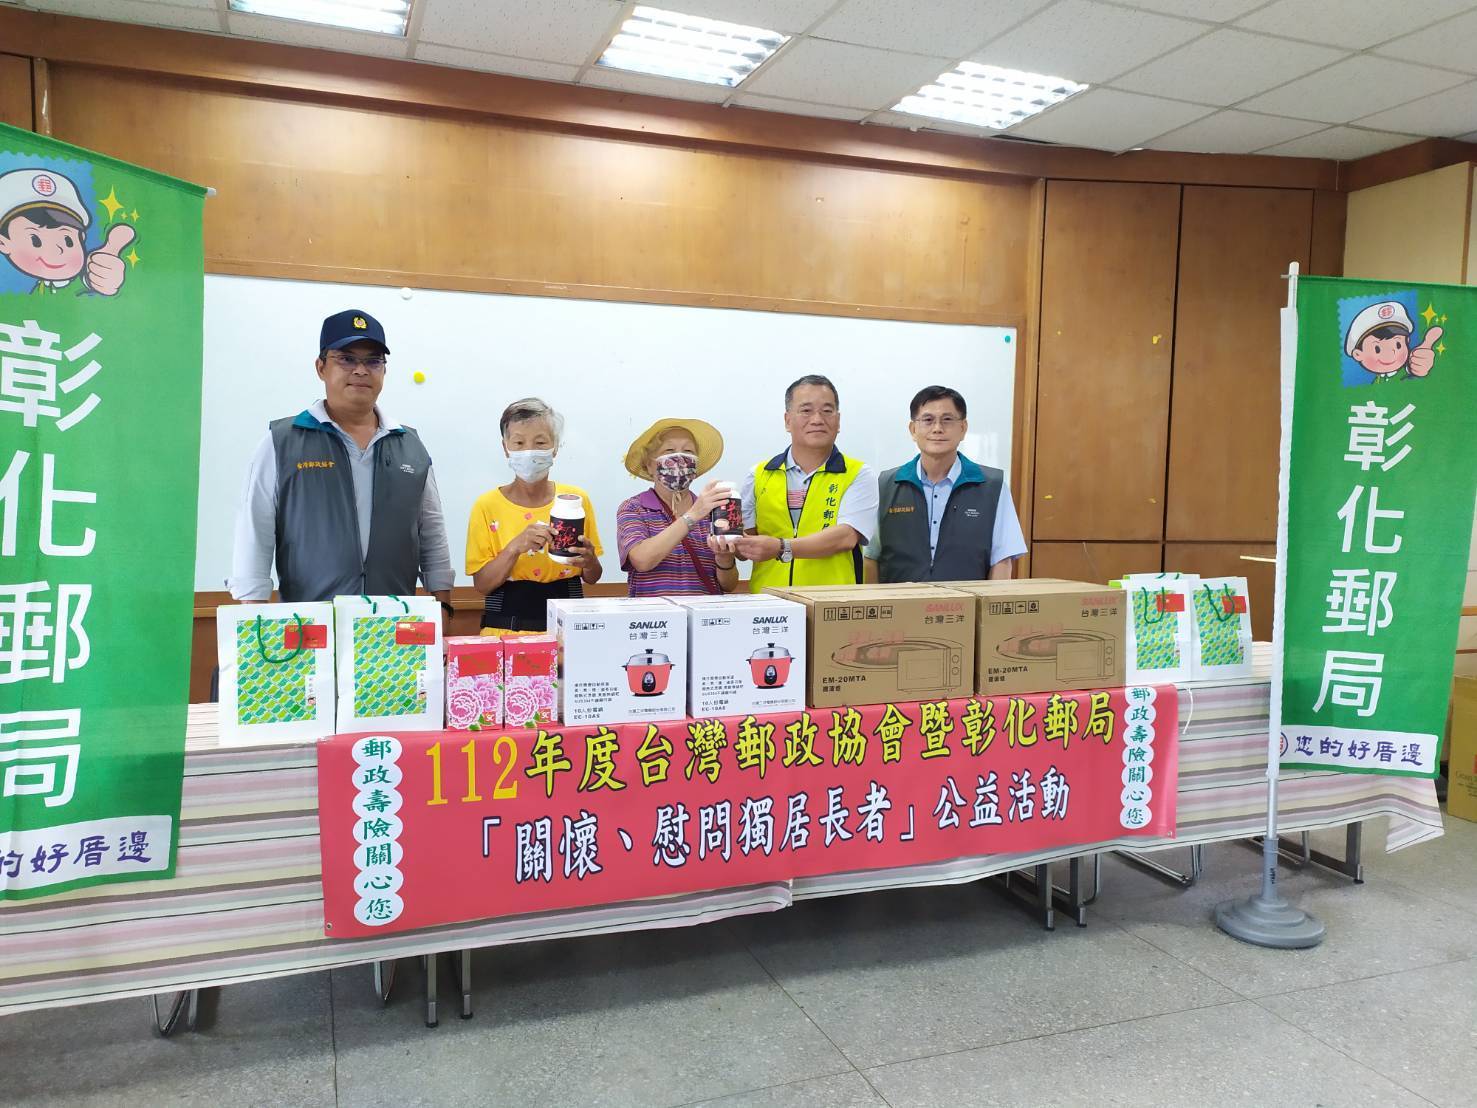 台灣郵政協會撥款為長者購置民生器具，獨居長者親至會場接受並表示感激